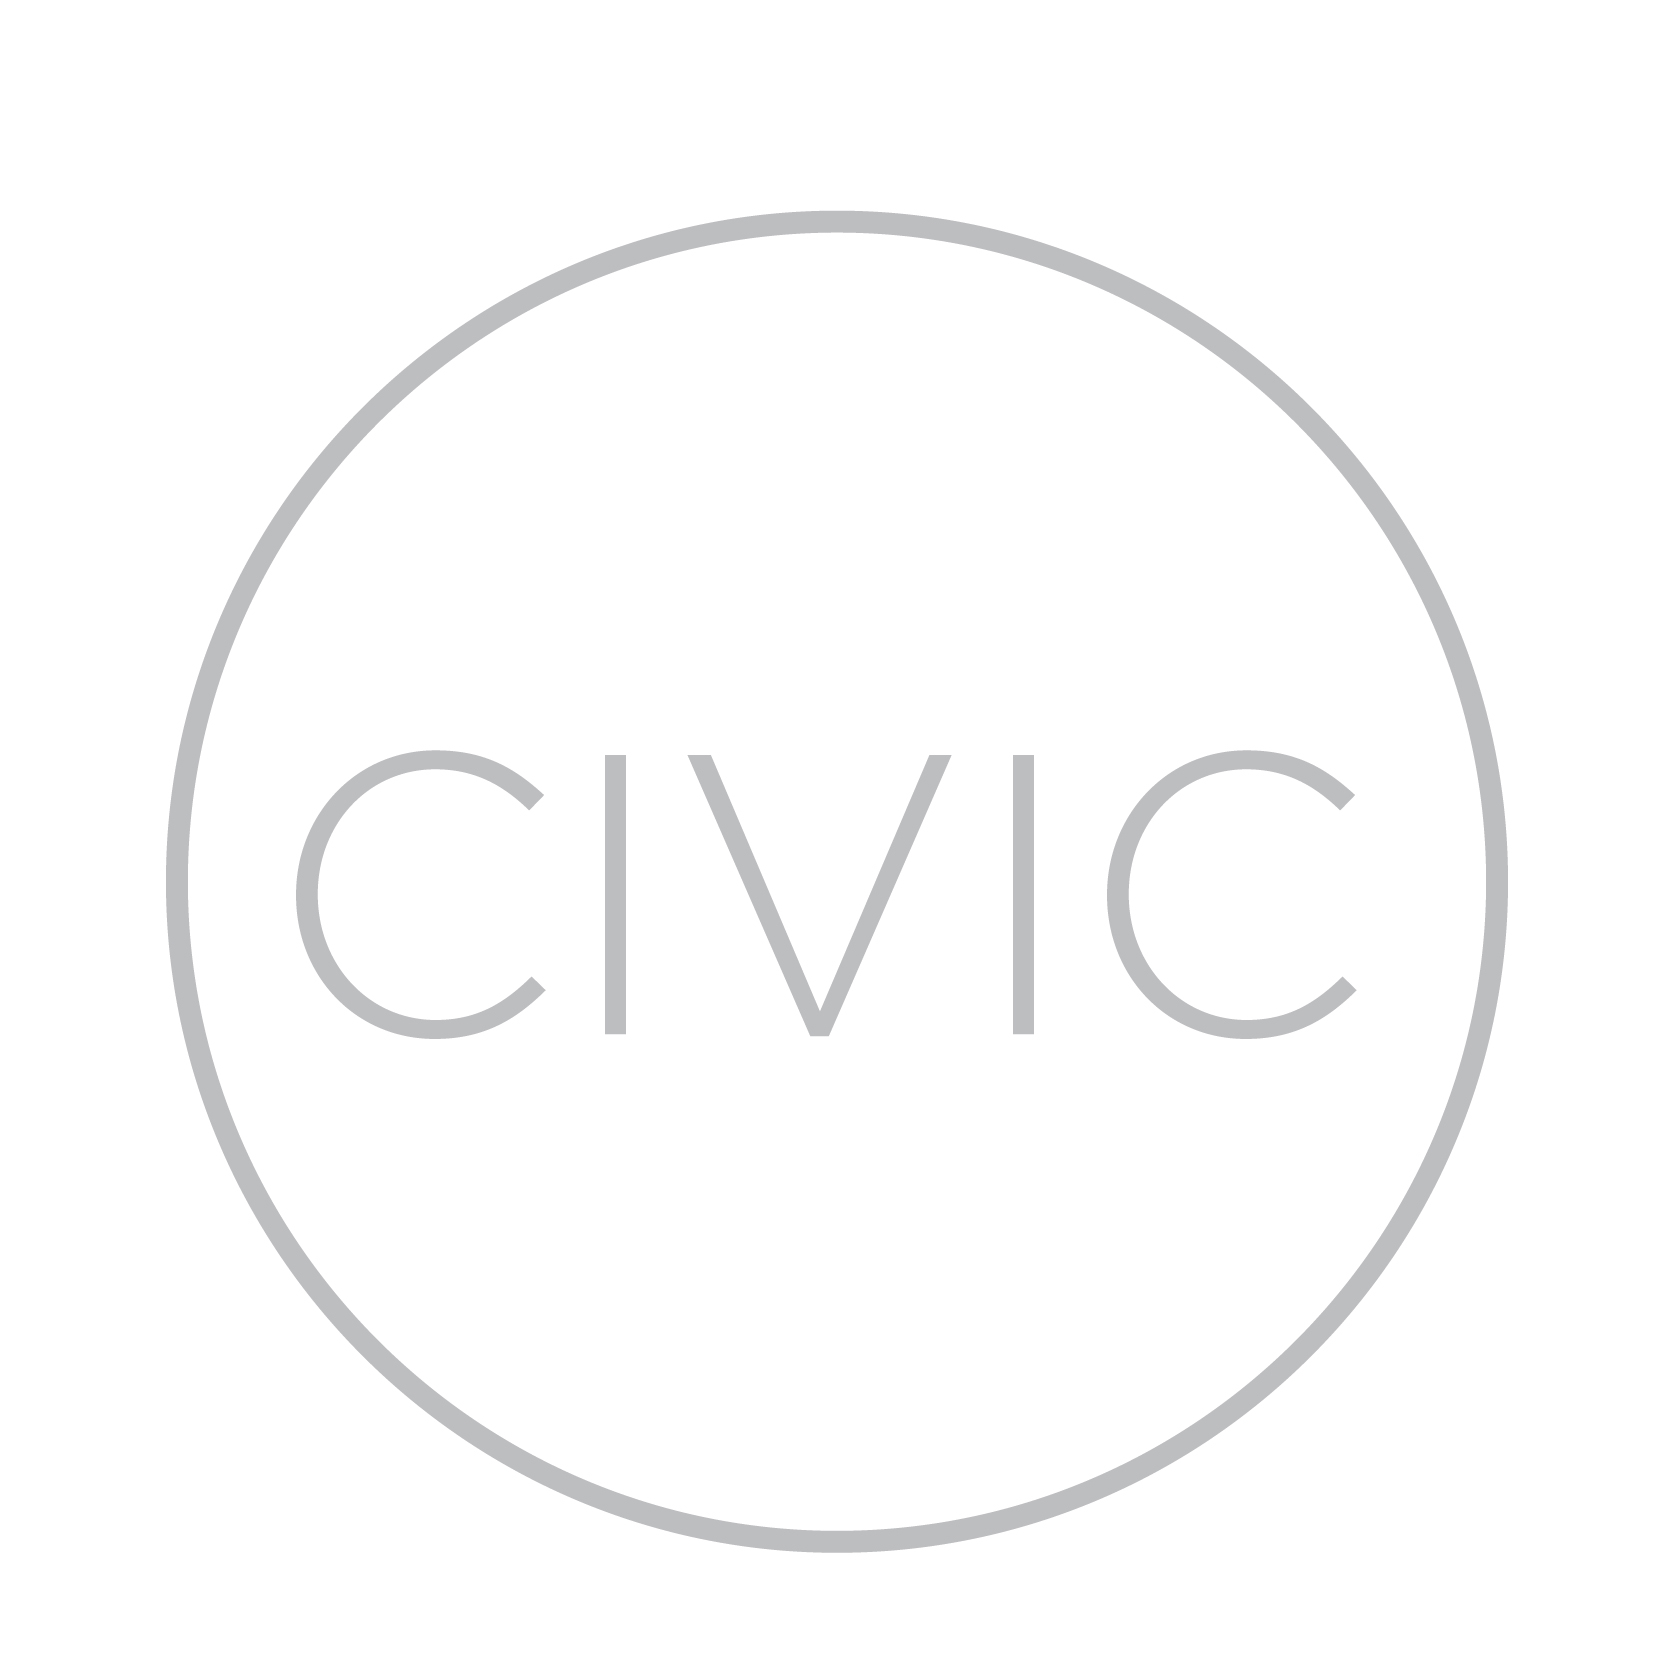 Civic-Entertainment-Group copy